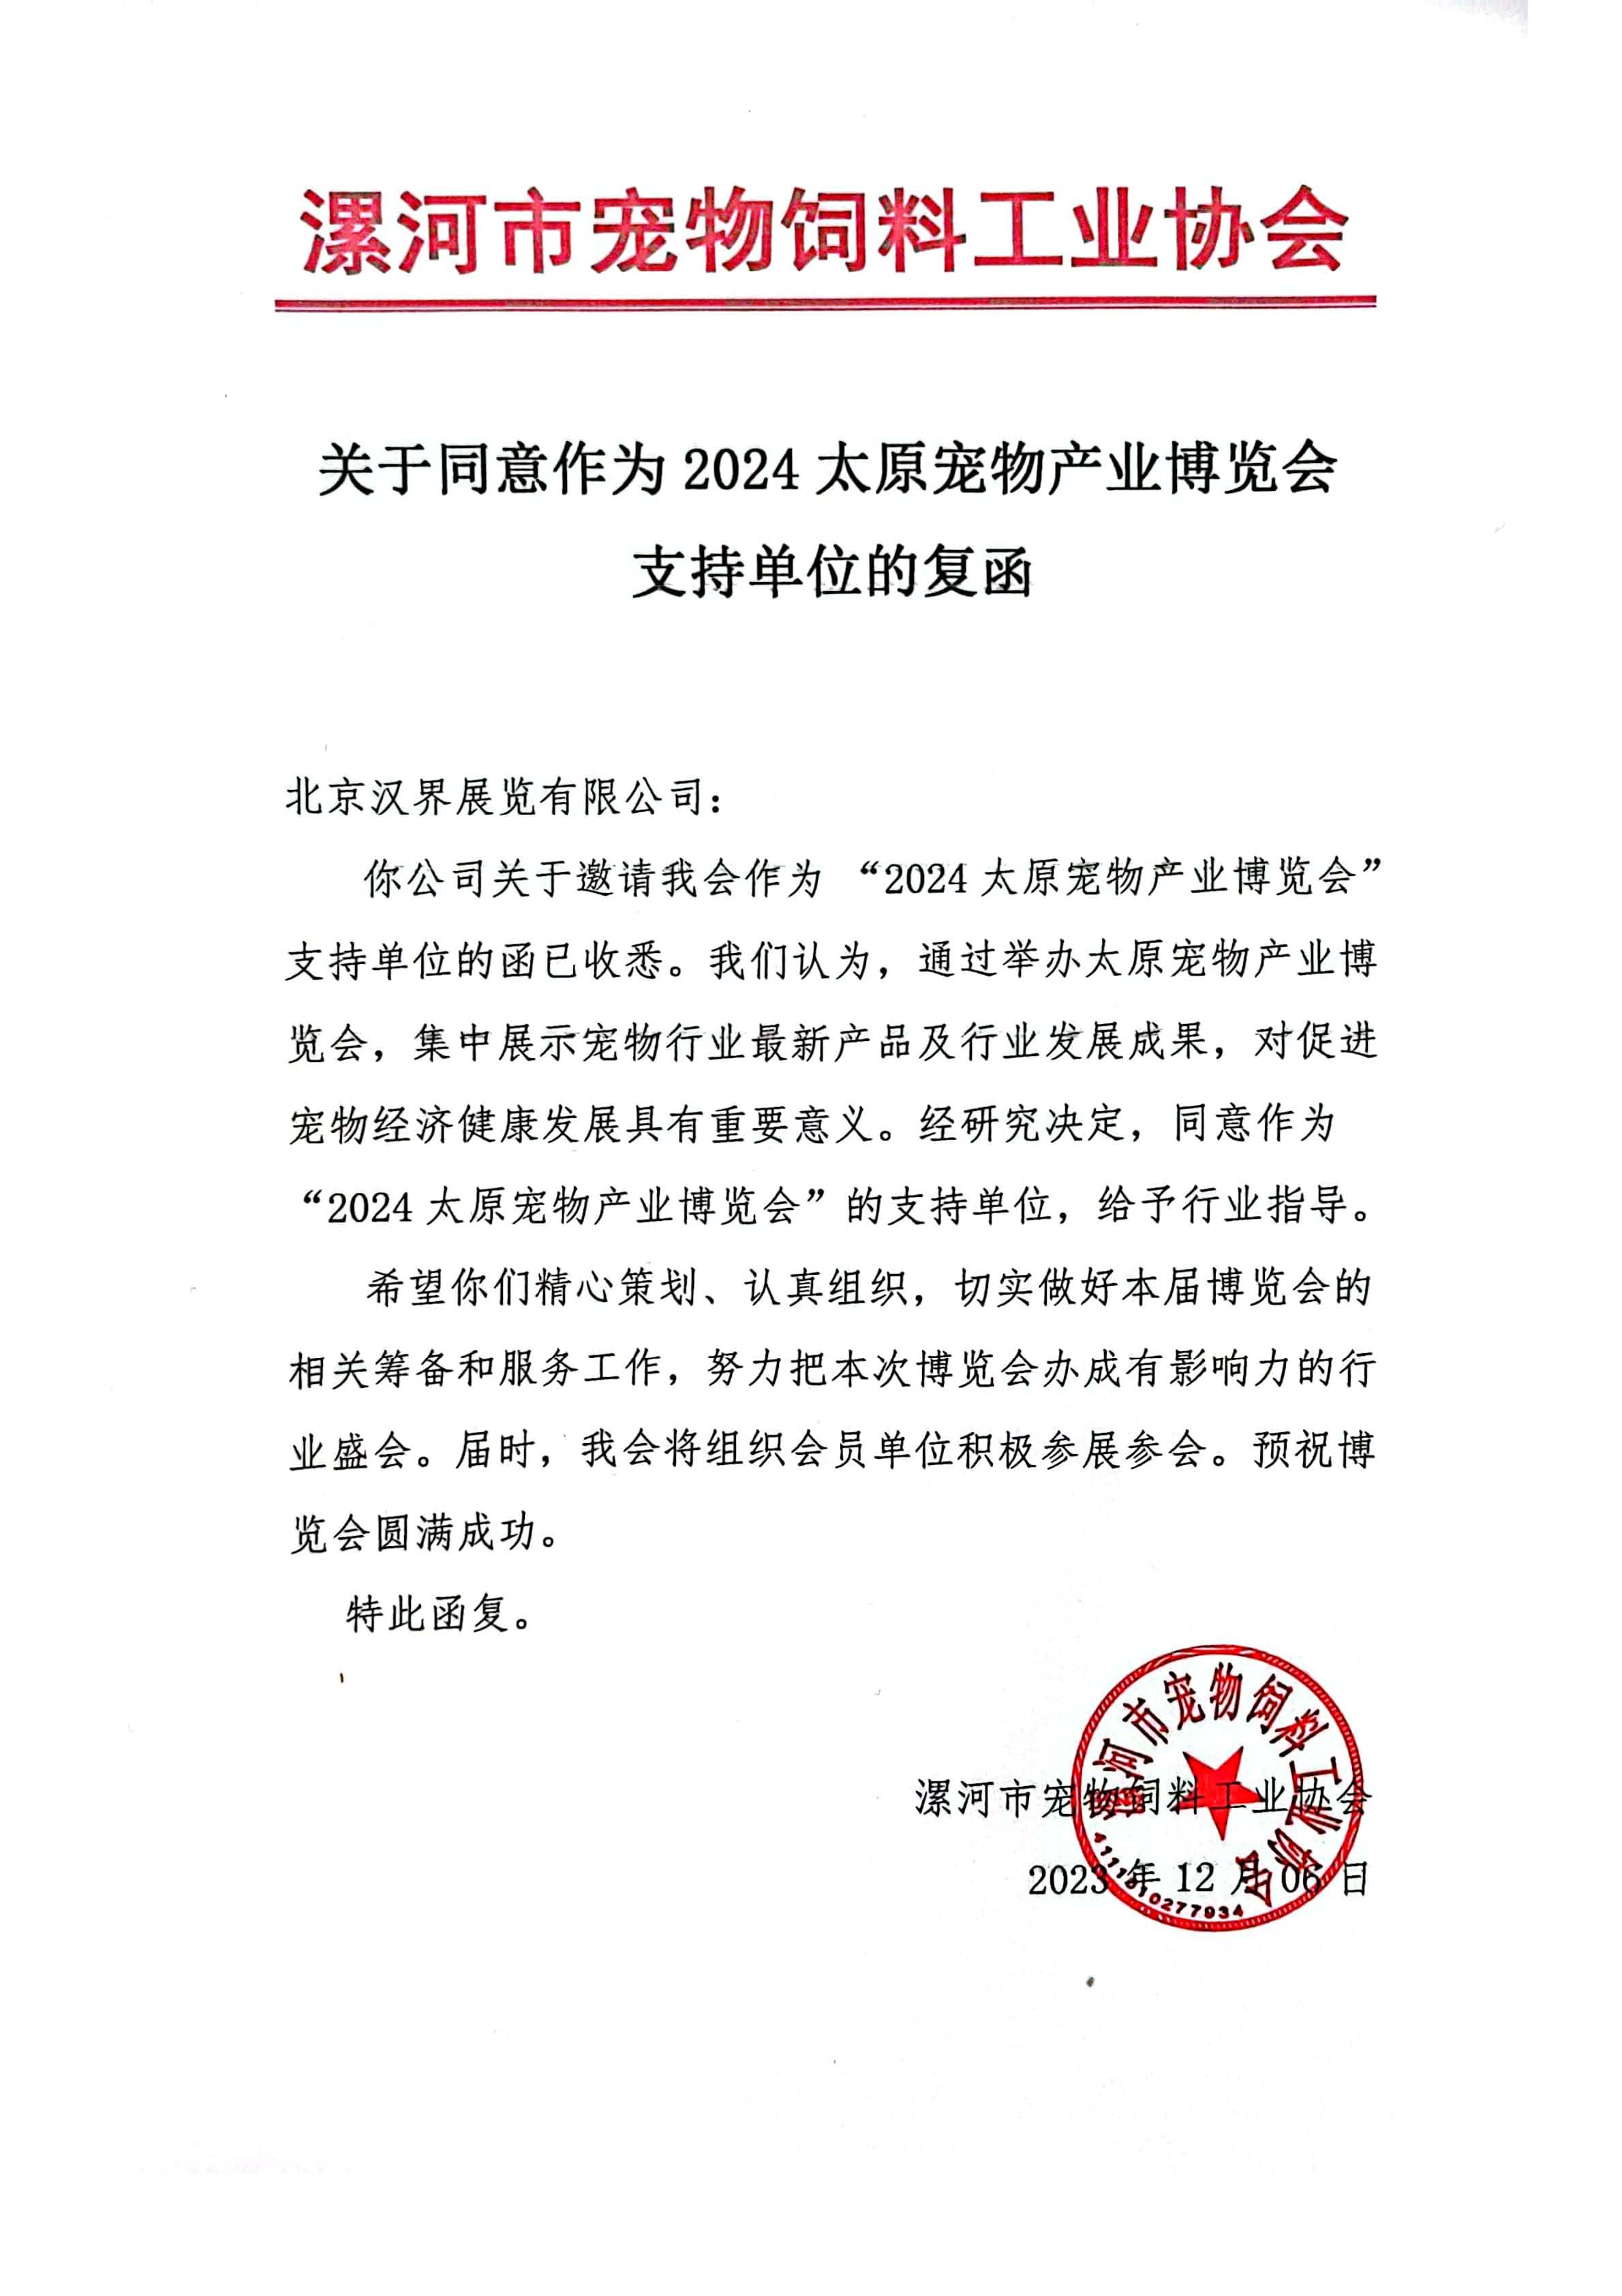 漯河市宠物饲料工业协会支持单位复函.jpg